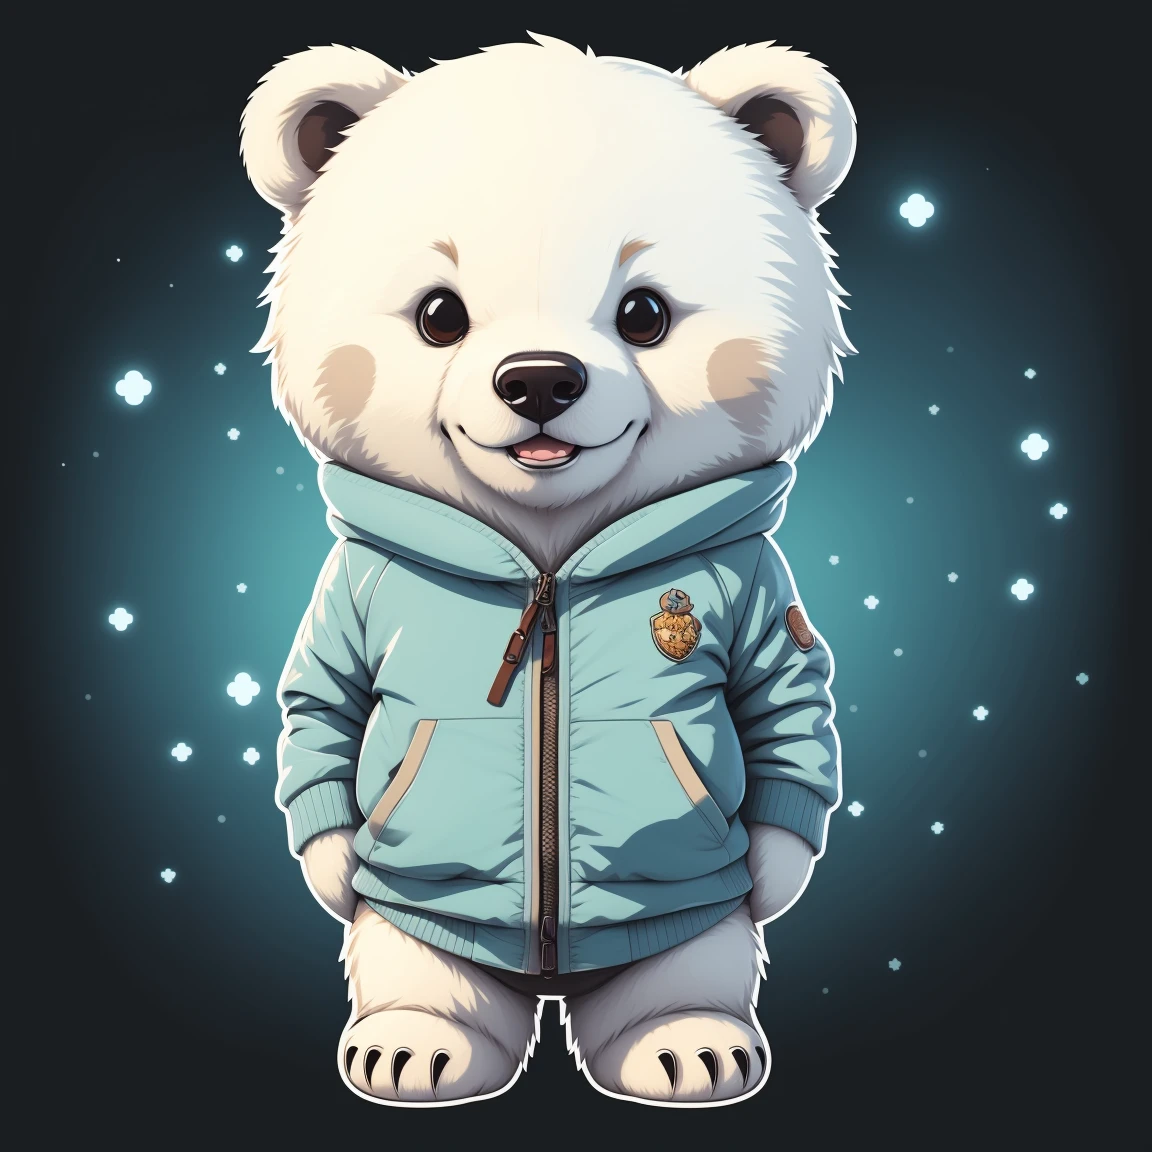 스티커 스타일, 애니메이션 스타일, 치비, 곰 1마리, 귀여운 북극곰 아바타, 판타지 배경